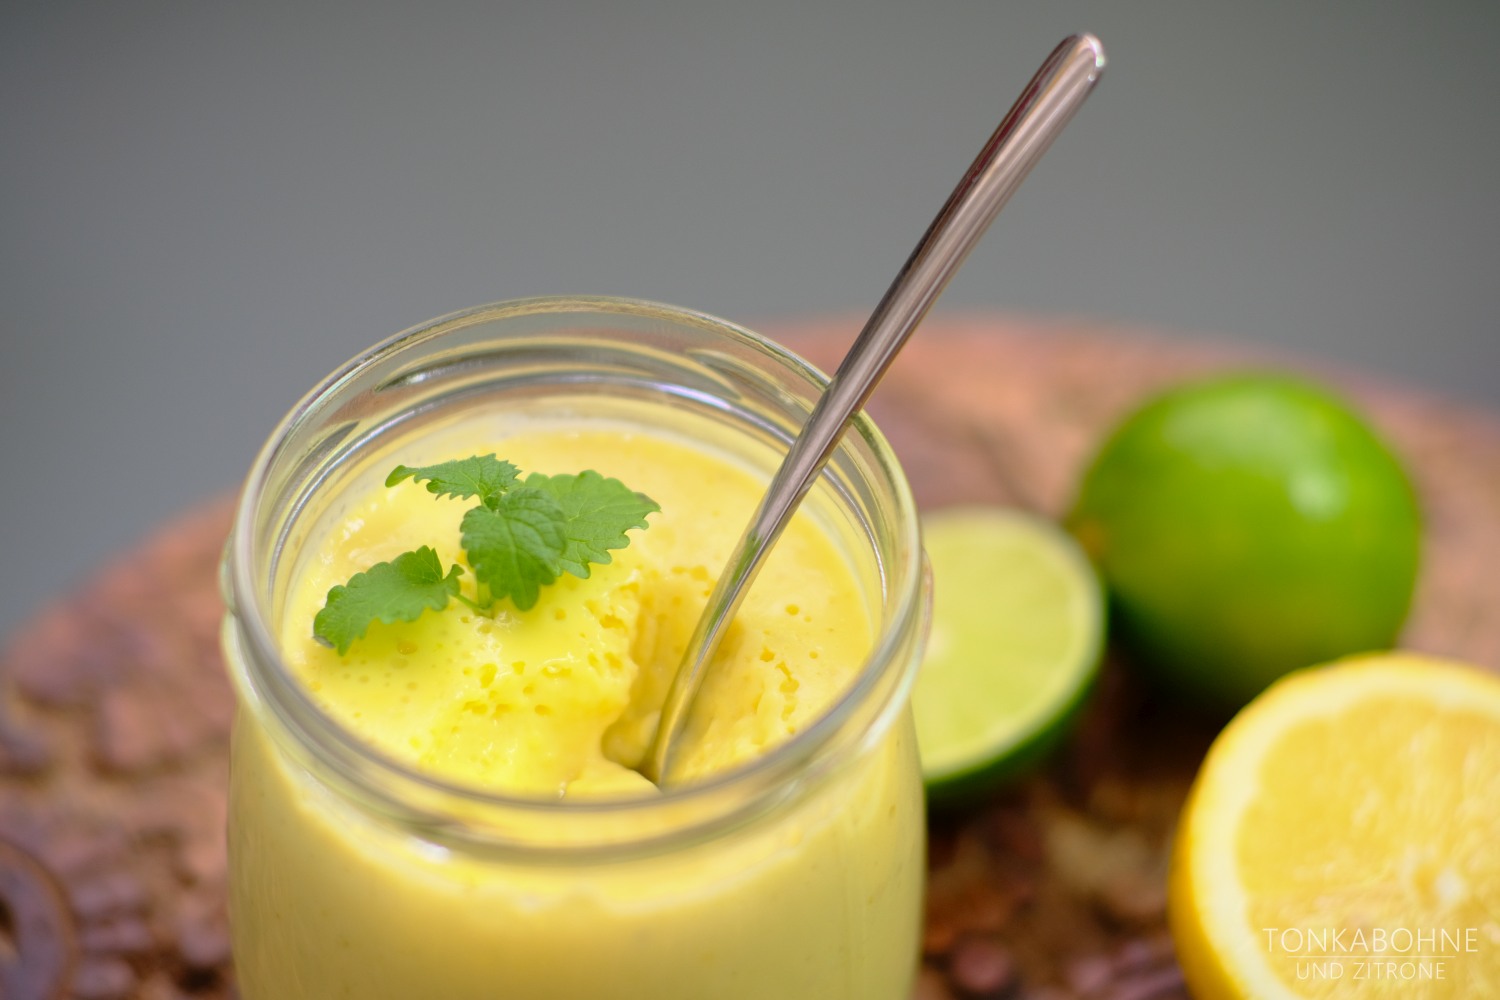 Creme aus Zitronen und Limetten - Tonkabohne und Zitrone | Backblog